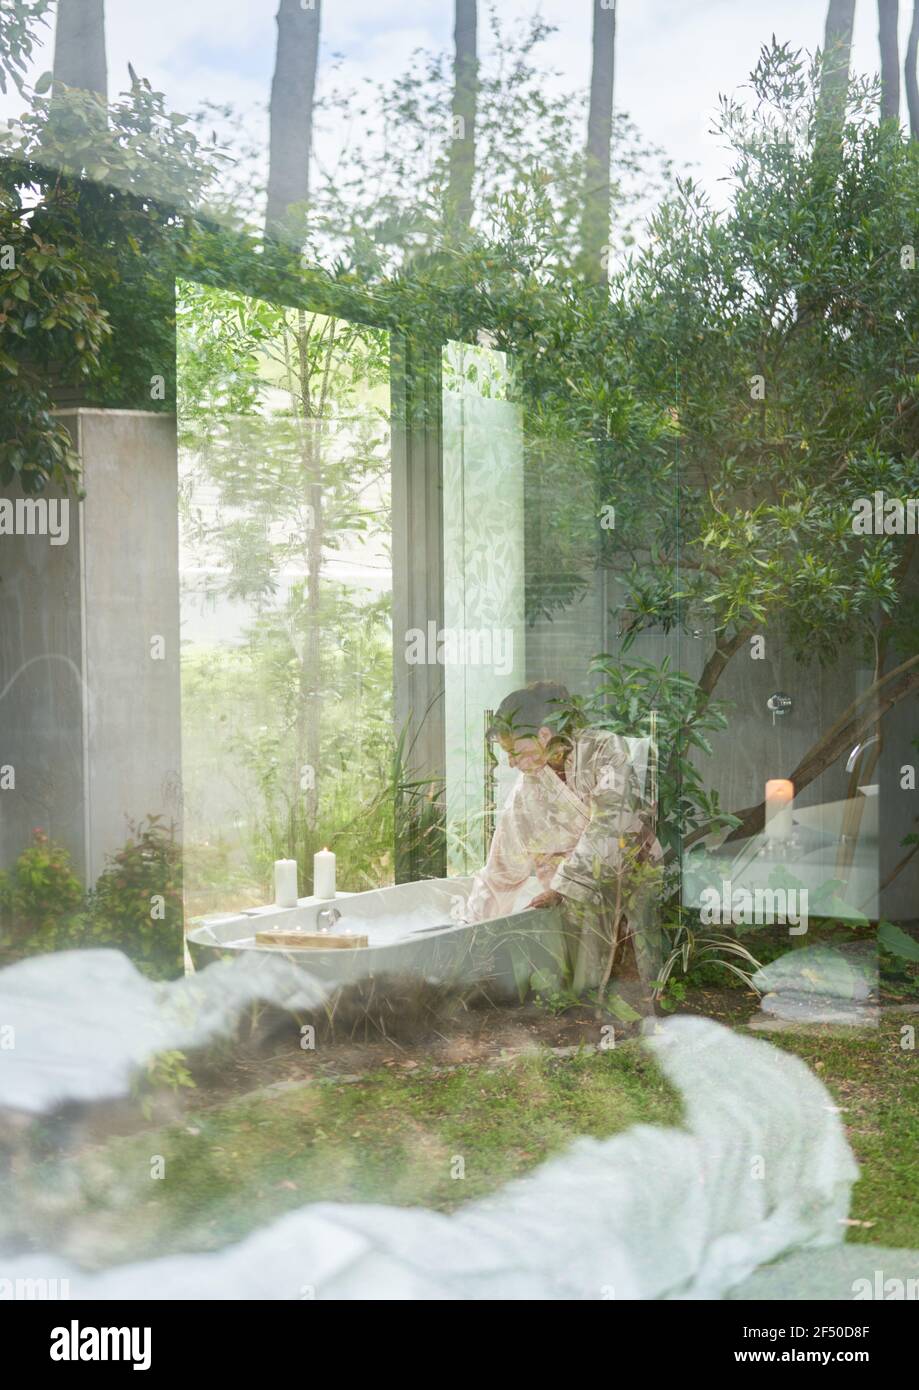 Femme préparant une baignoire dans une salle de bains moderne de luxe Banque D'Images